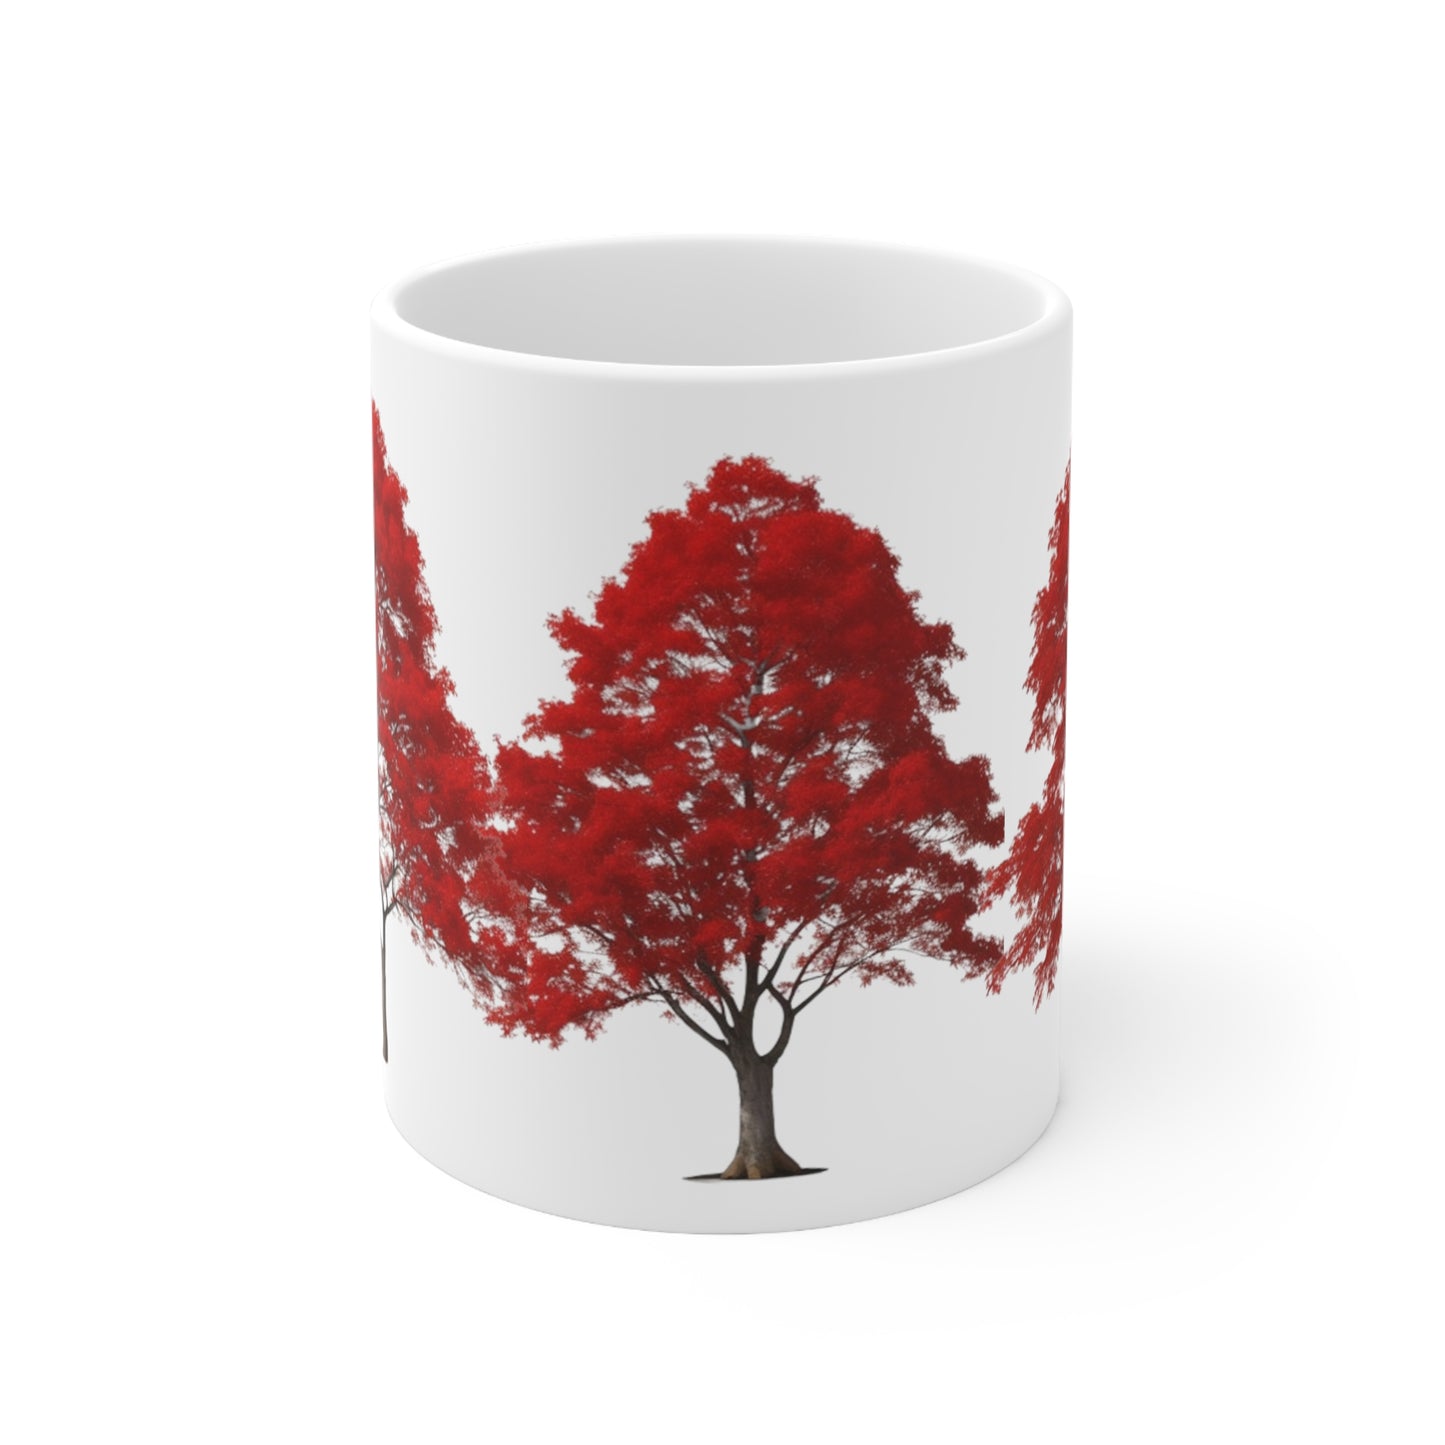 Red Trees Mug - Ceramic Coffee Mug 11oz